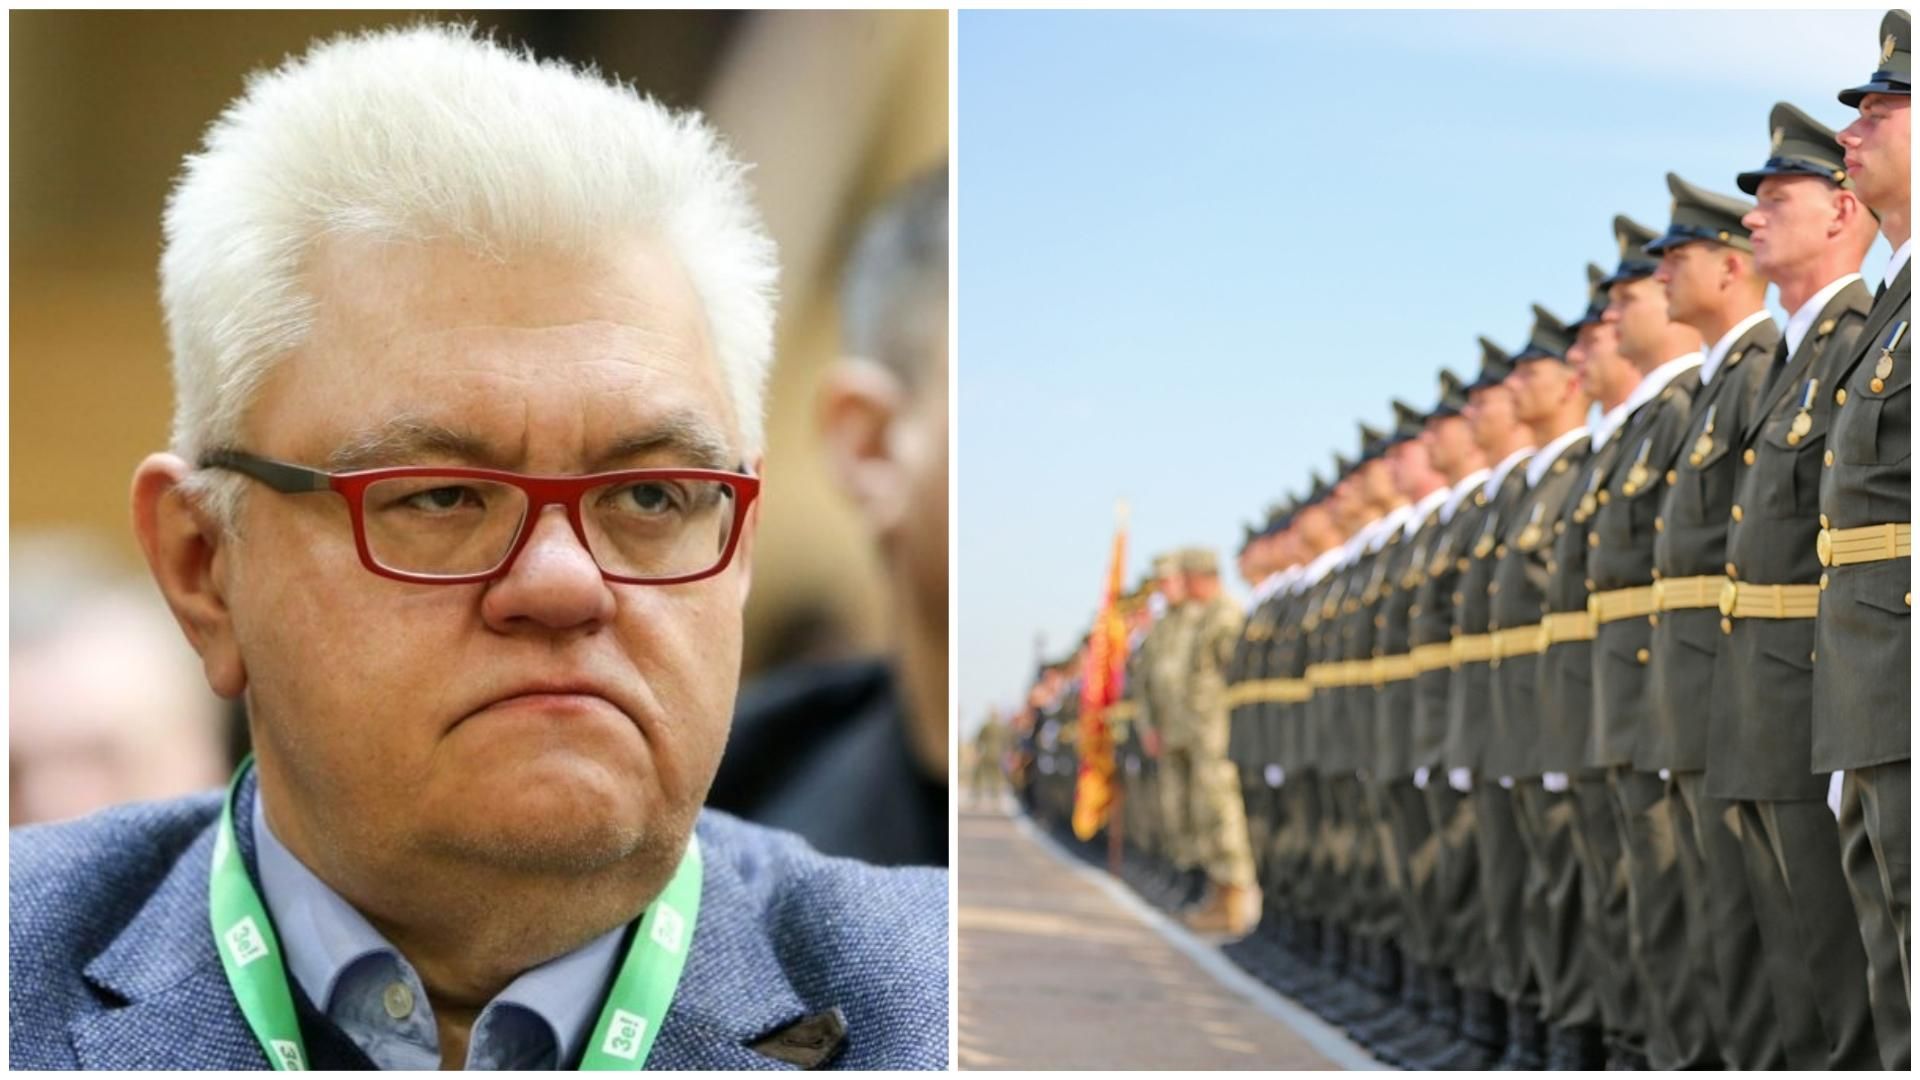 Сивохо позволил себе неоднозначное высказывания об украинской армии